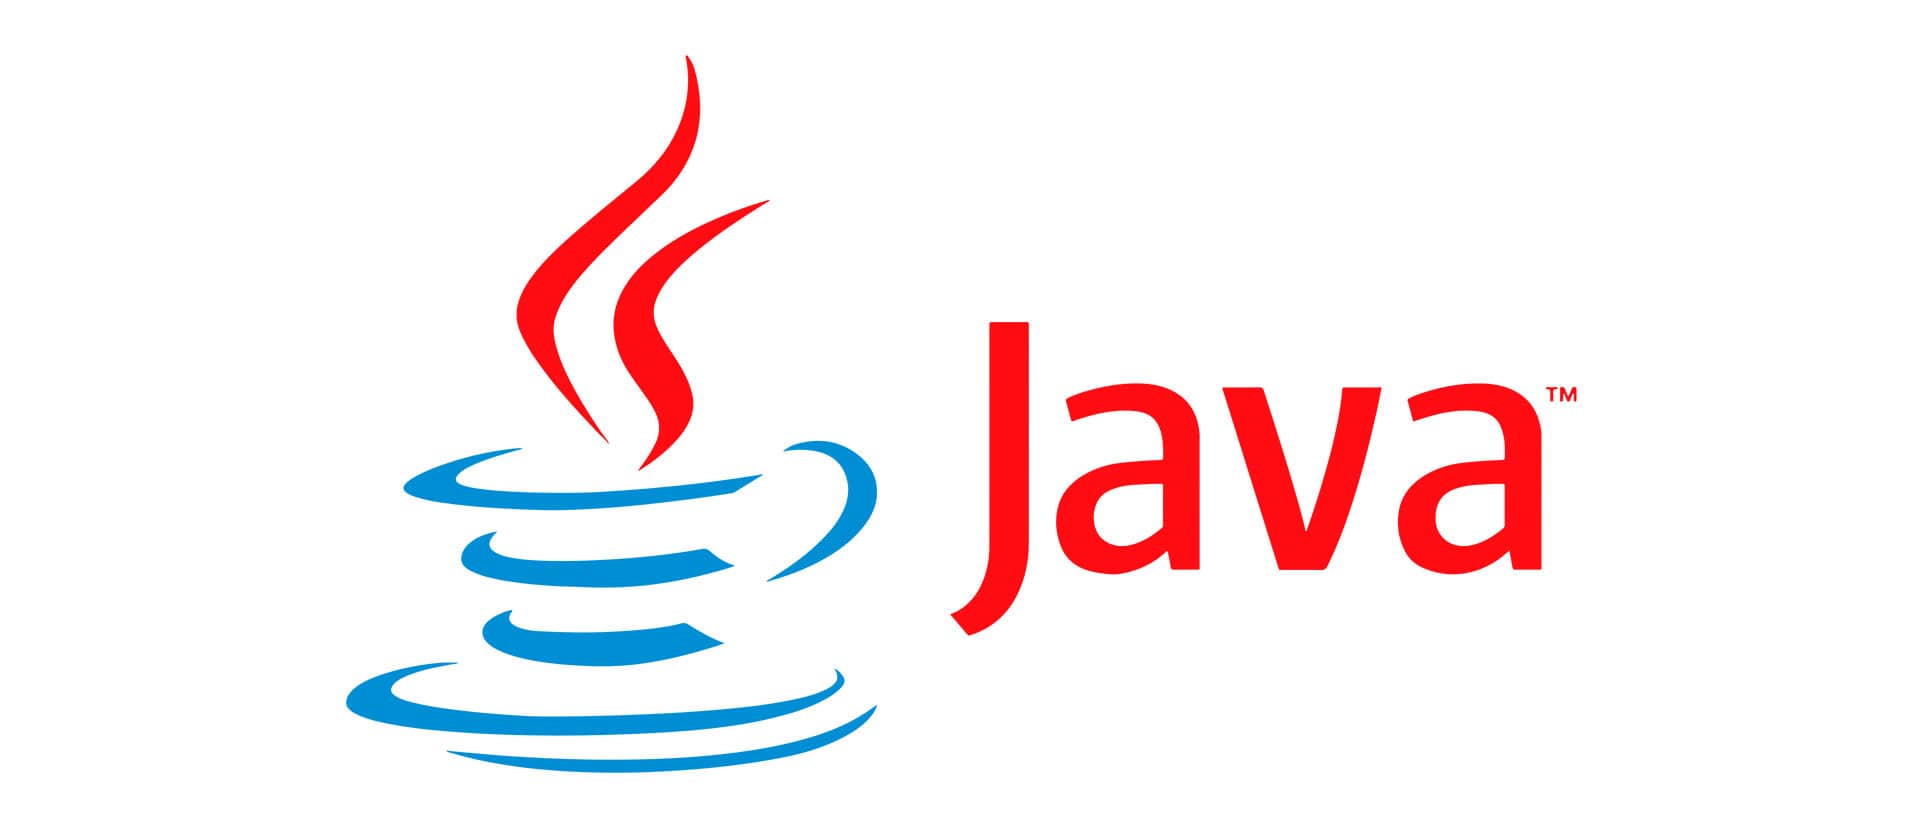 День java. Java язык программирования logo. Jvaязык программирования логотип. Джава язык программирования логотип. Жавалоготип язык программирования.